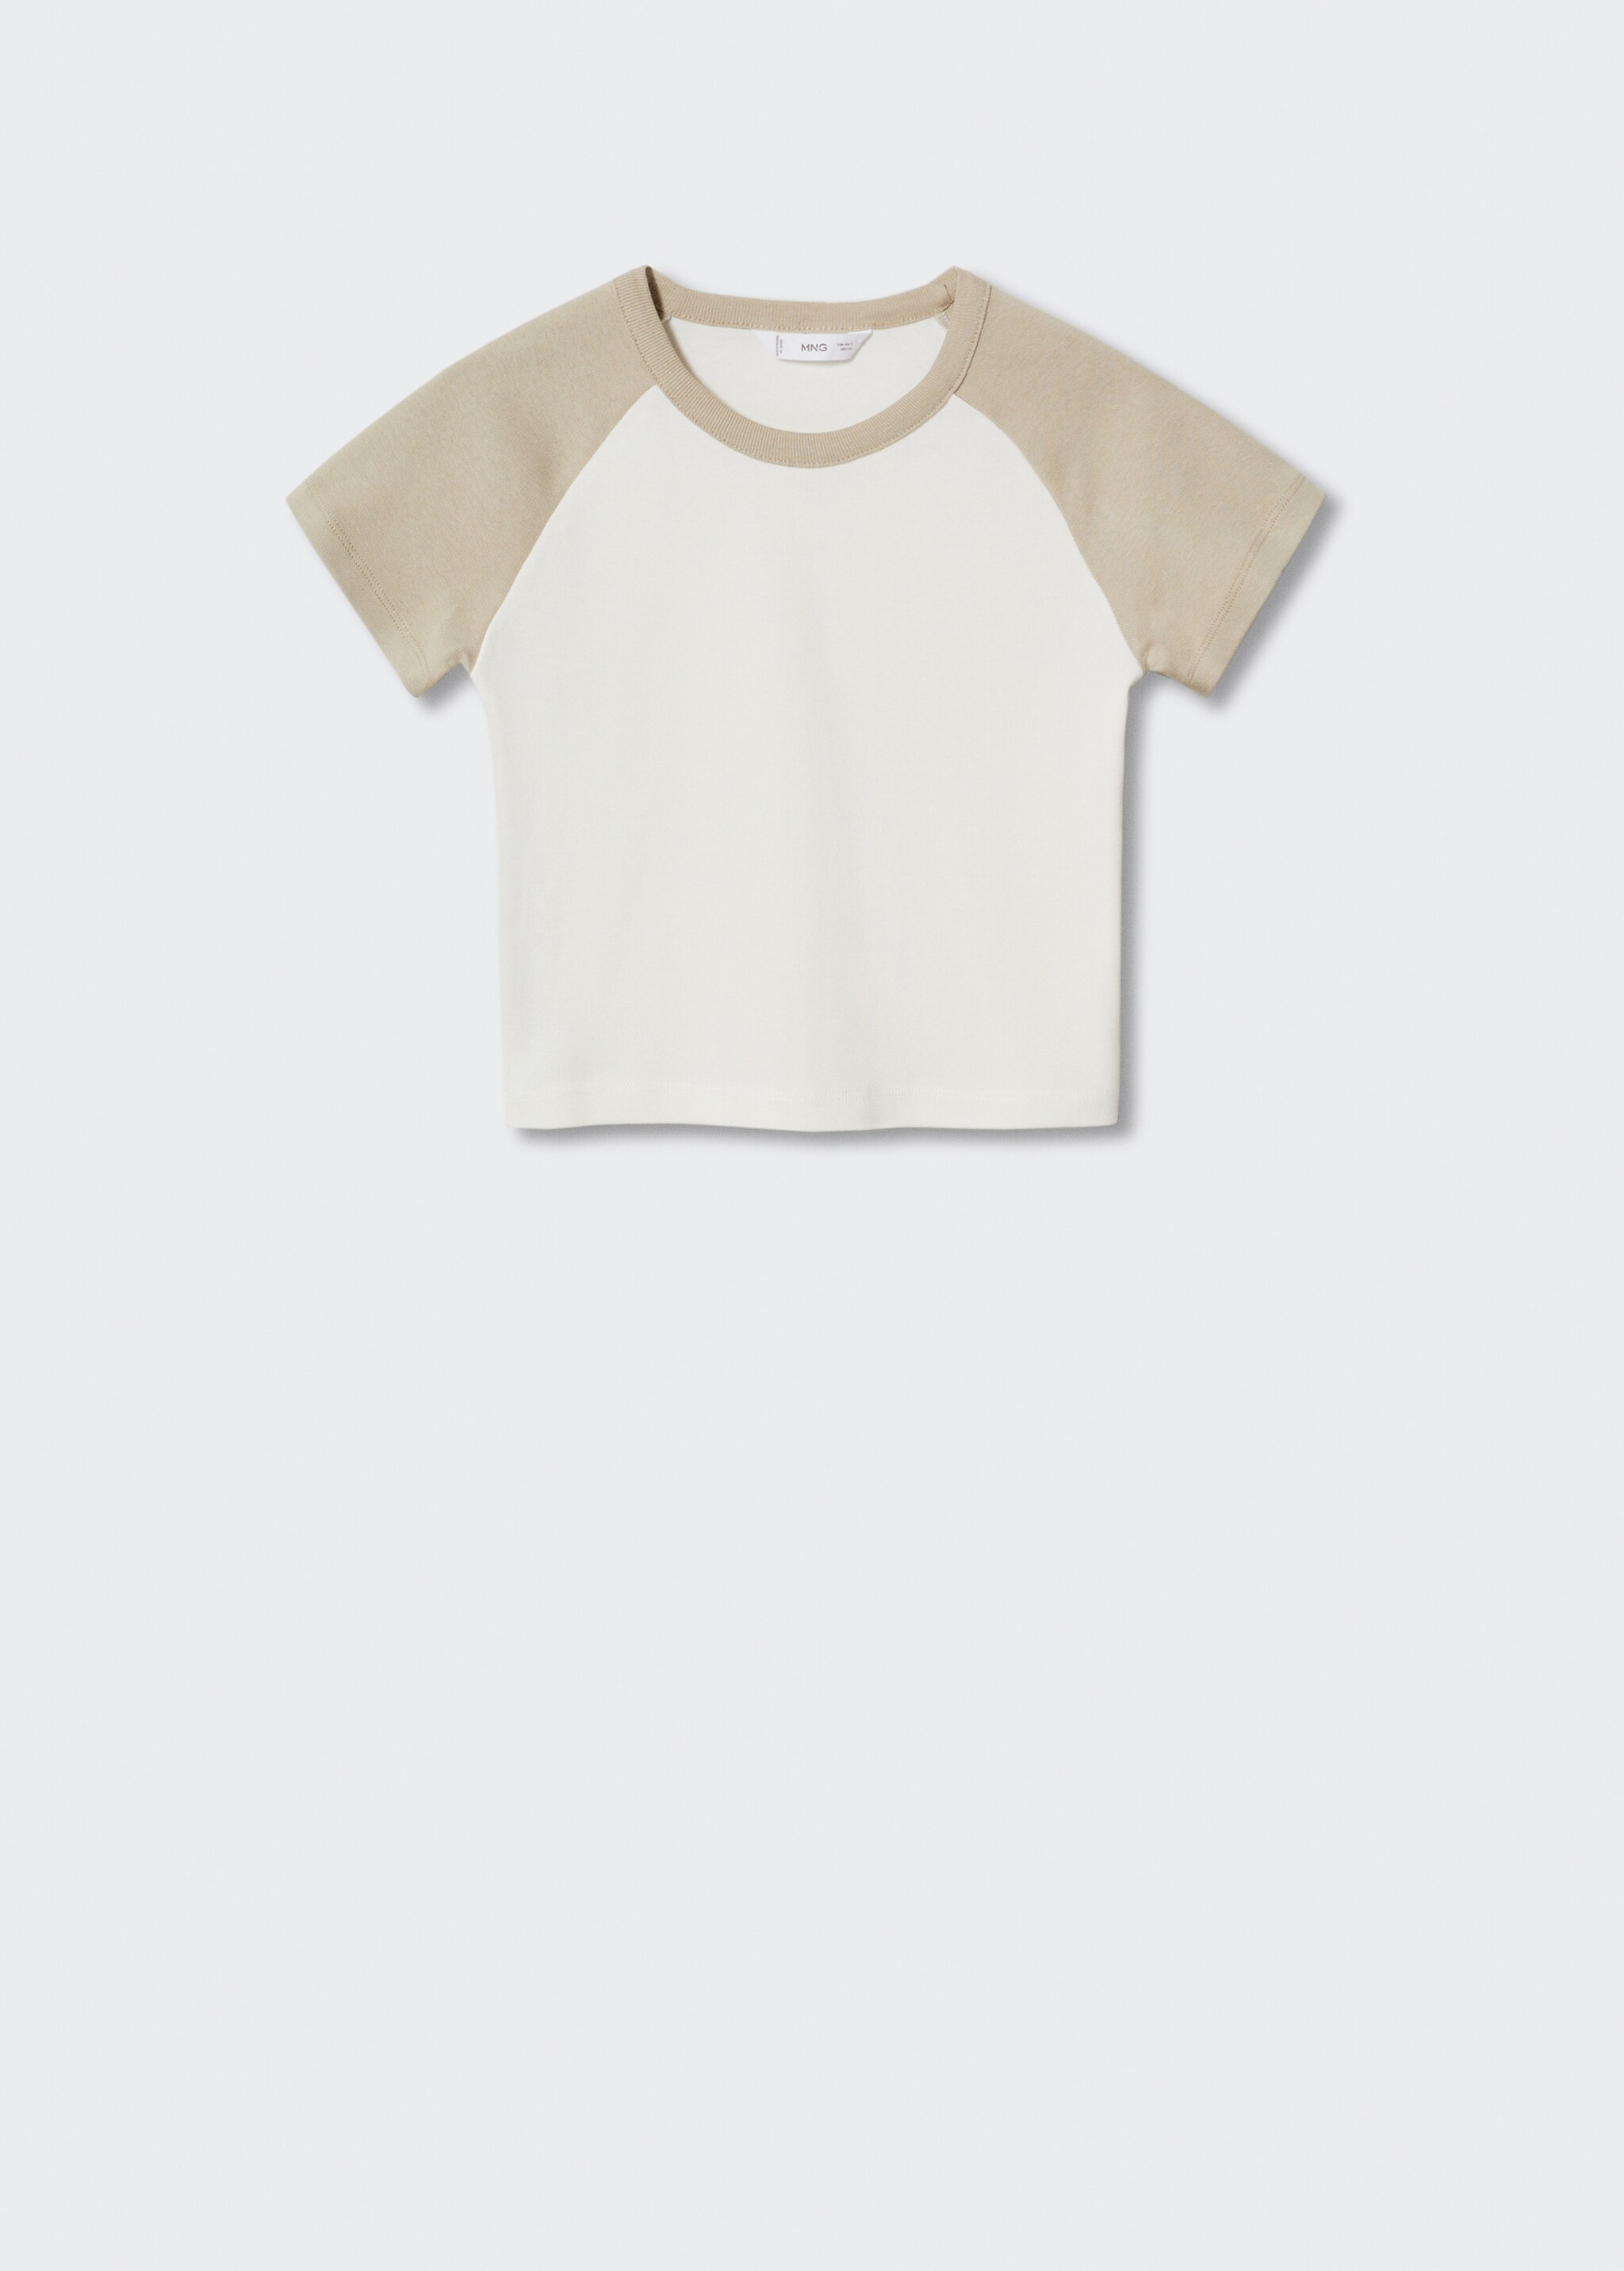 Camiseta algodón bicolor - Artículo sin modelo